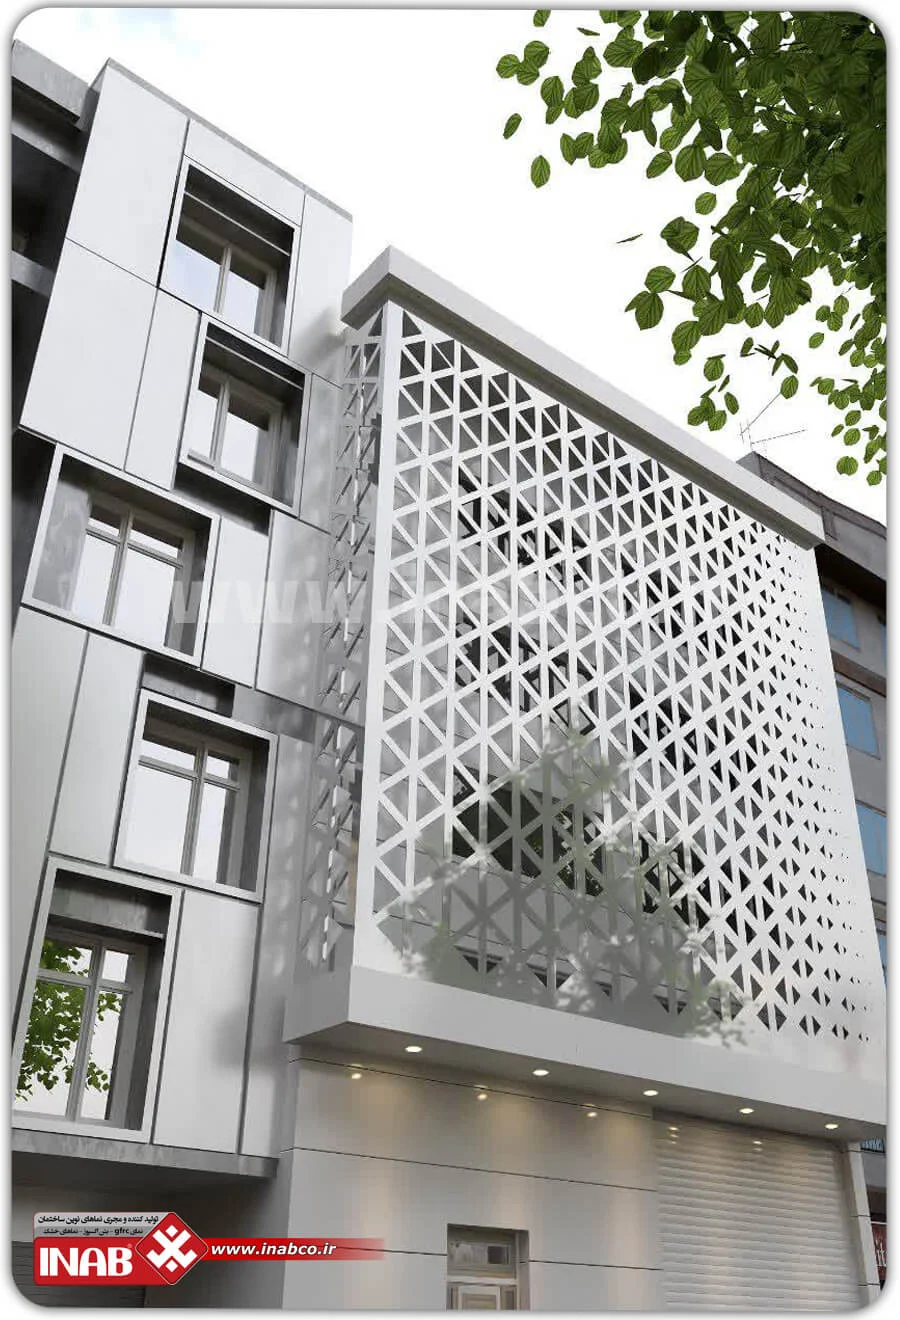 قیمت نمای کامپوزیت - قیمت طراحی نما - نمای مشبک - نمای سه طبقه ساختمان